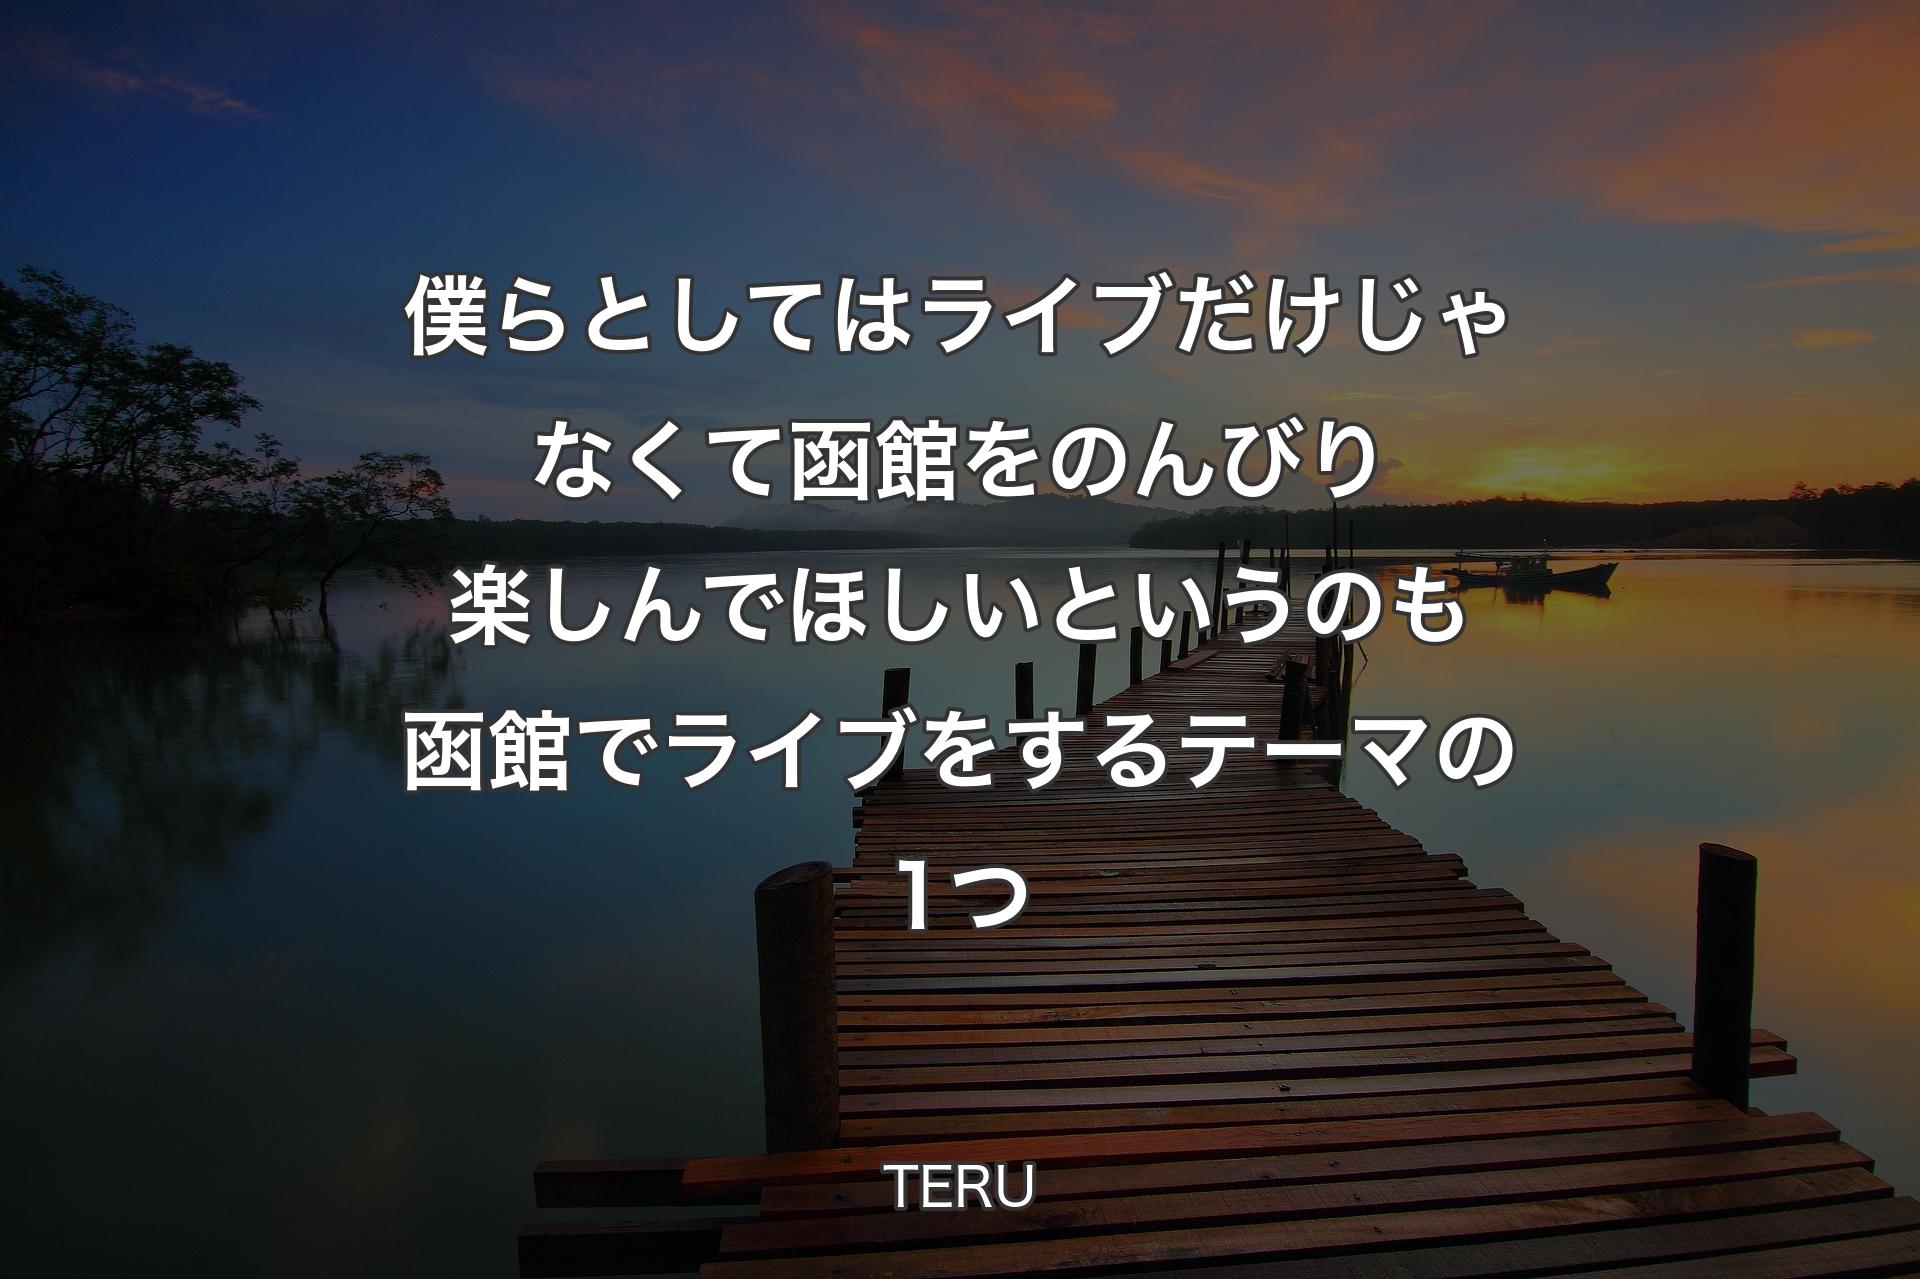 【背景3】僕らとしてはライブだけじゃなくて函館をのんびり楽しんでほしいというのも函館でライブをするテーマの1つ - TERU